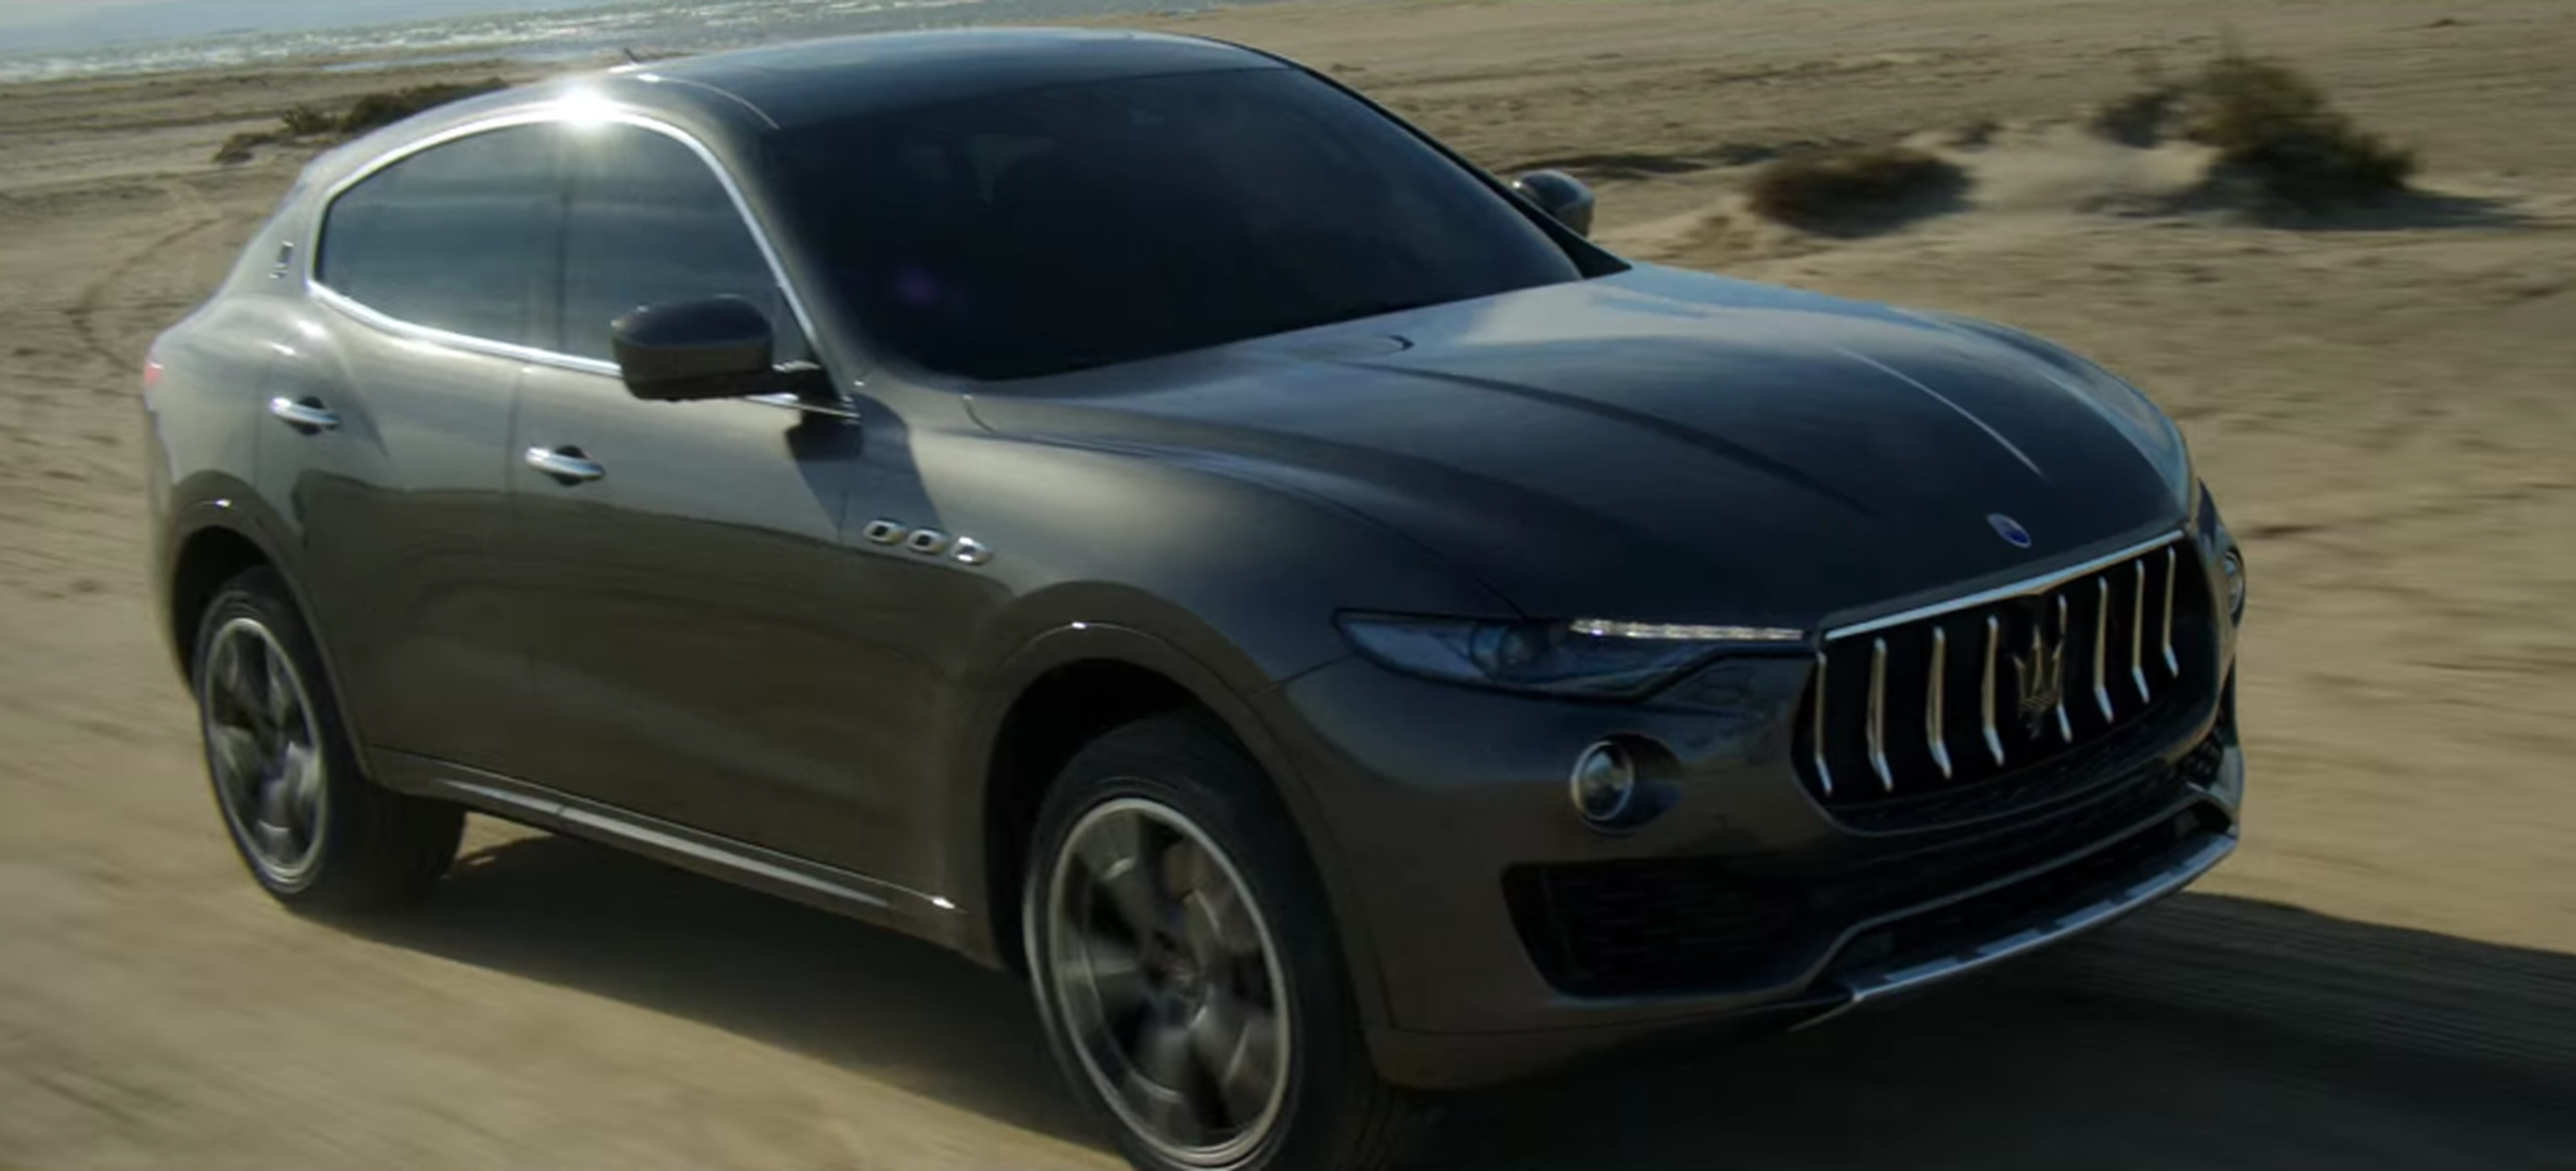 VÍDEO: ¡Así de terrorífico suena el Maserati Levante!